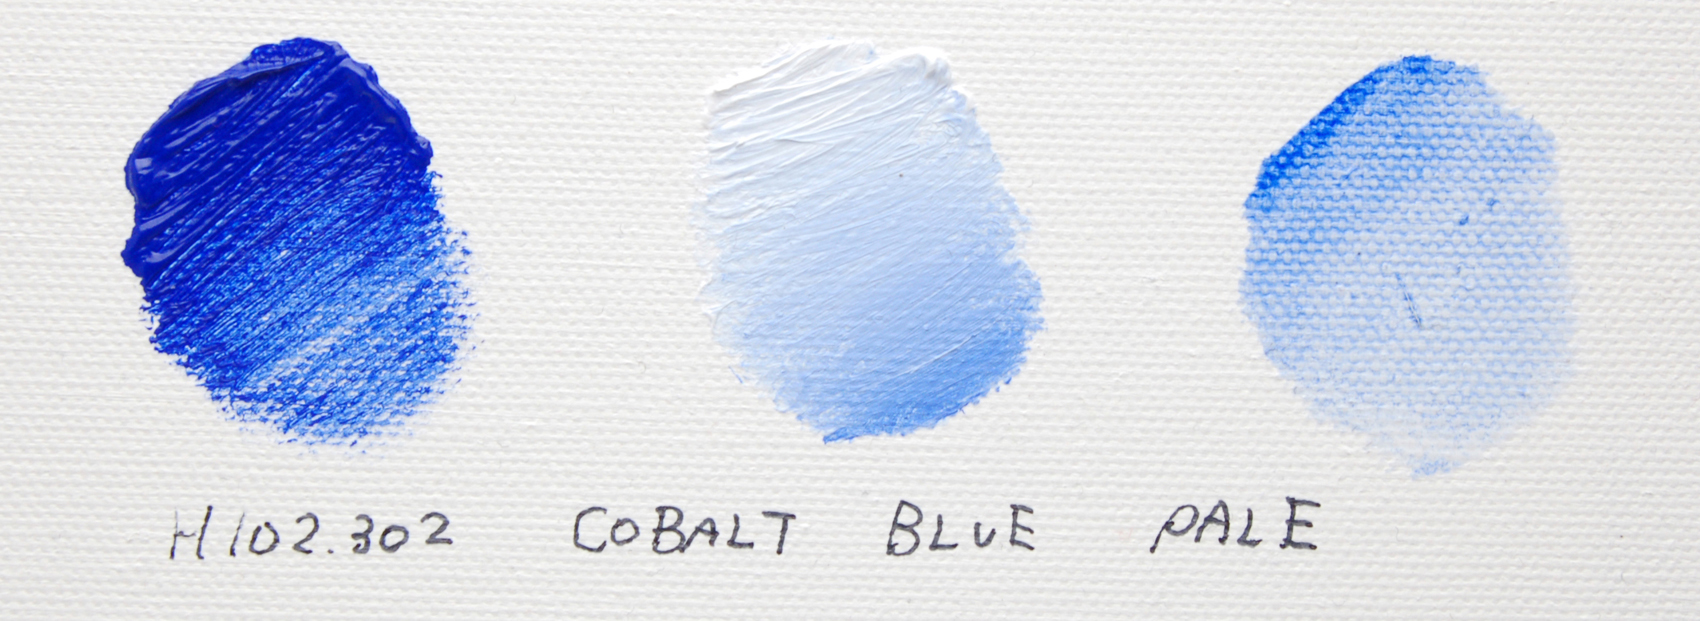 コバルトブルーペール/COBALT BLUE PALE